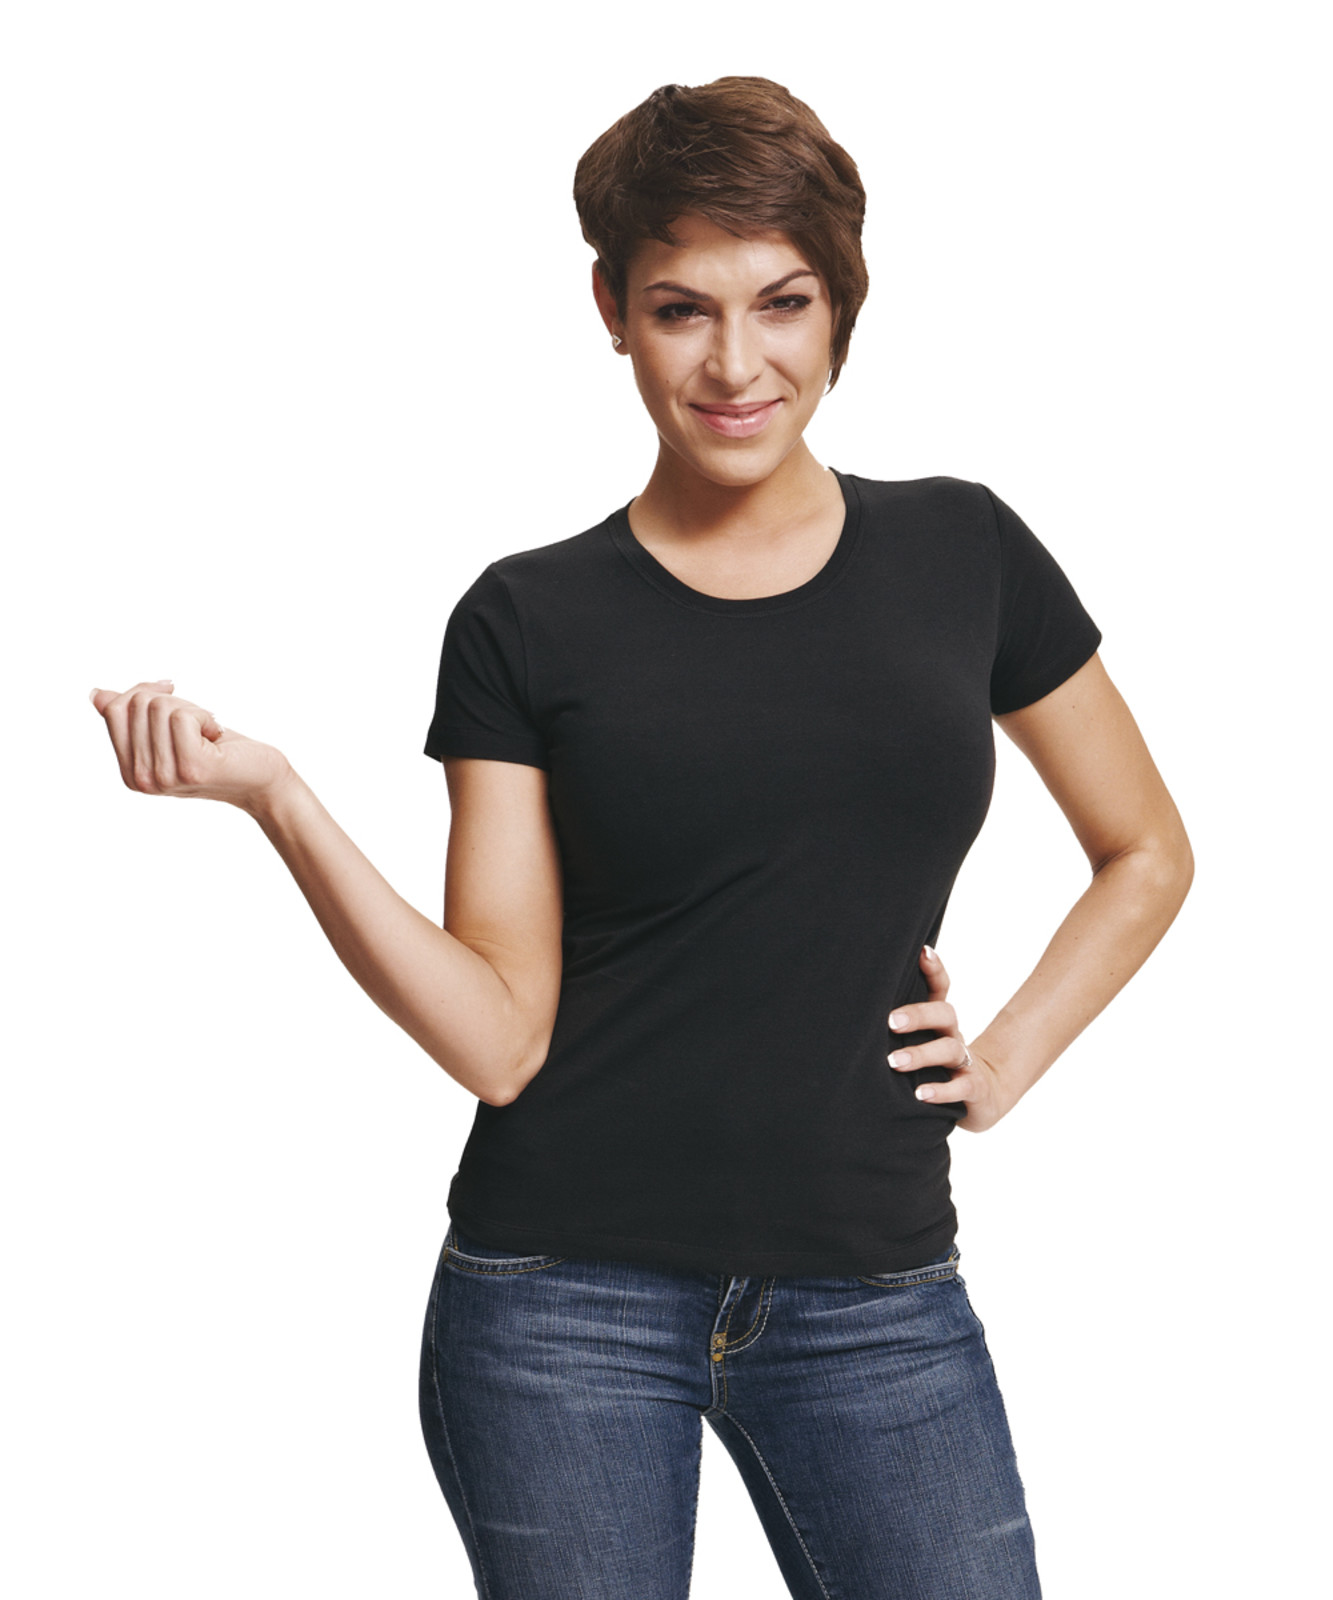 Dámske tričko s krátkym rukávom Surma Lady - veľkosť: S, farba: čierna